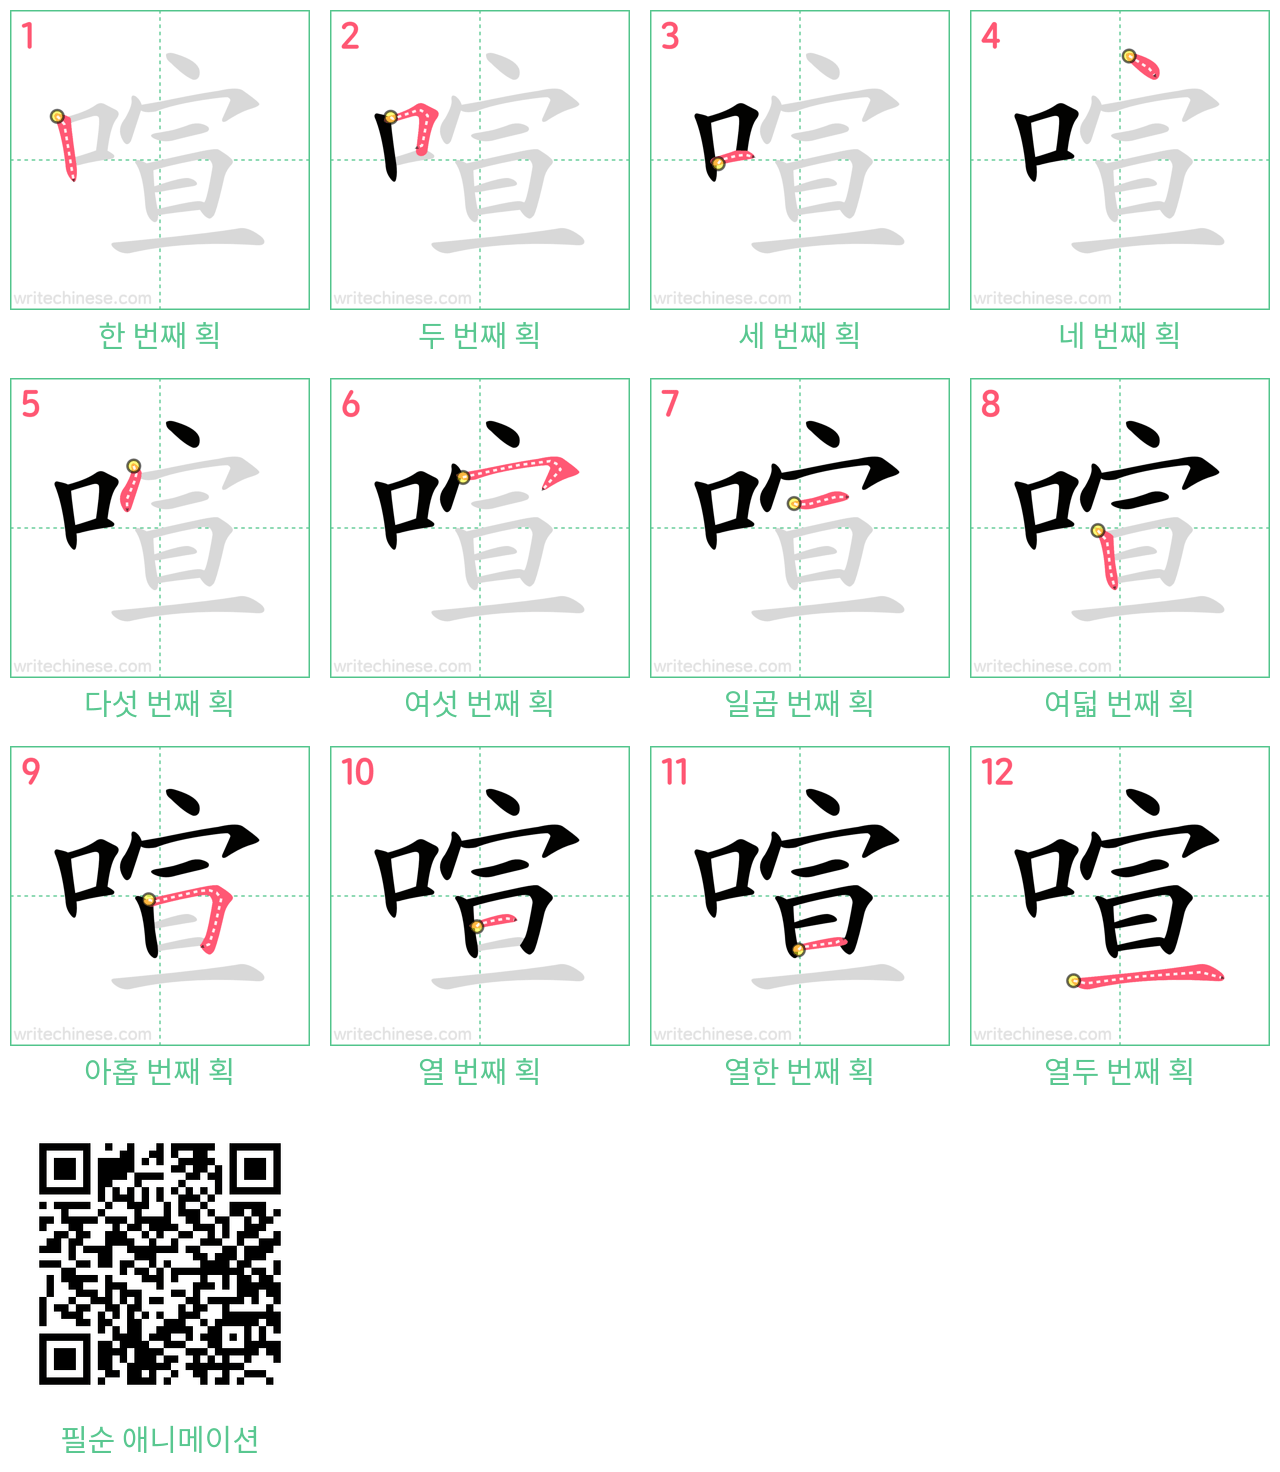 喧 step-by-step stroke order diagrams